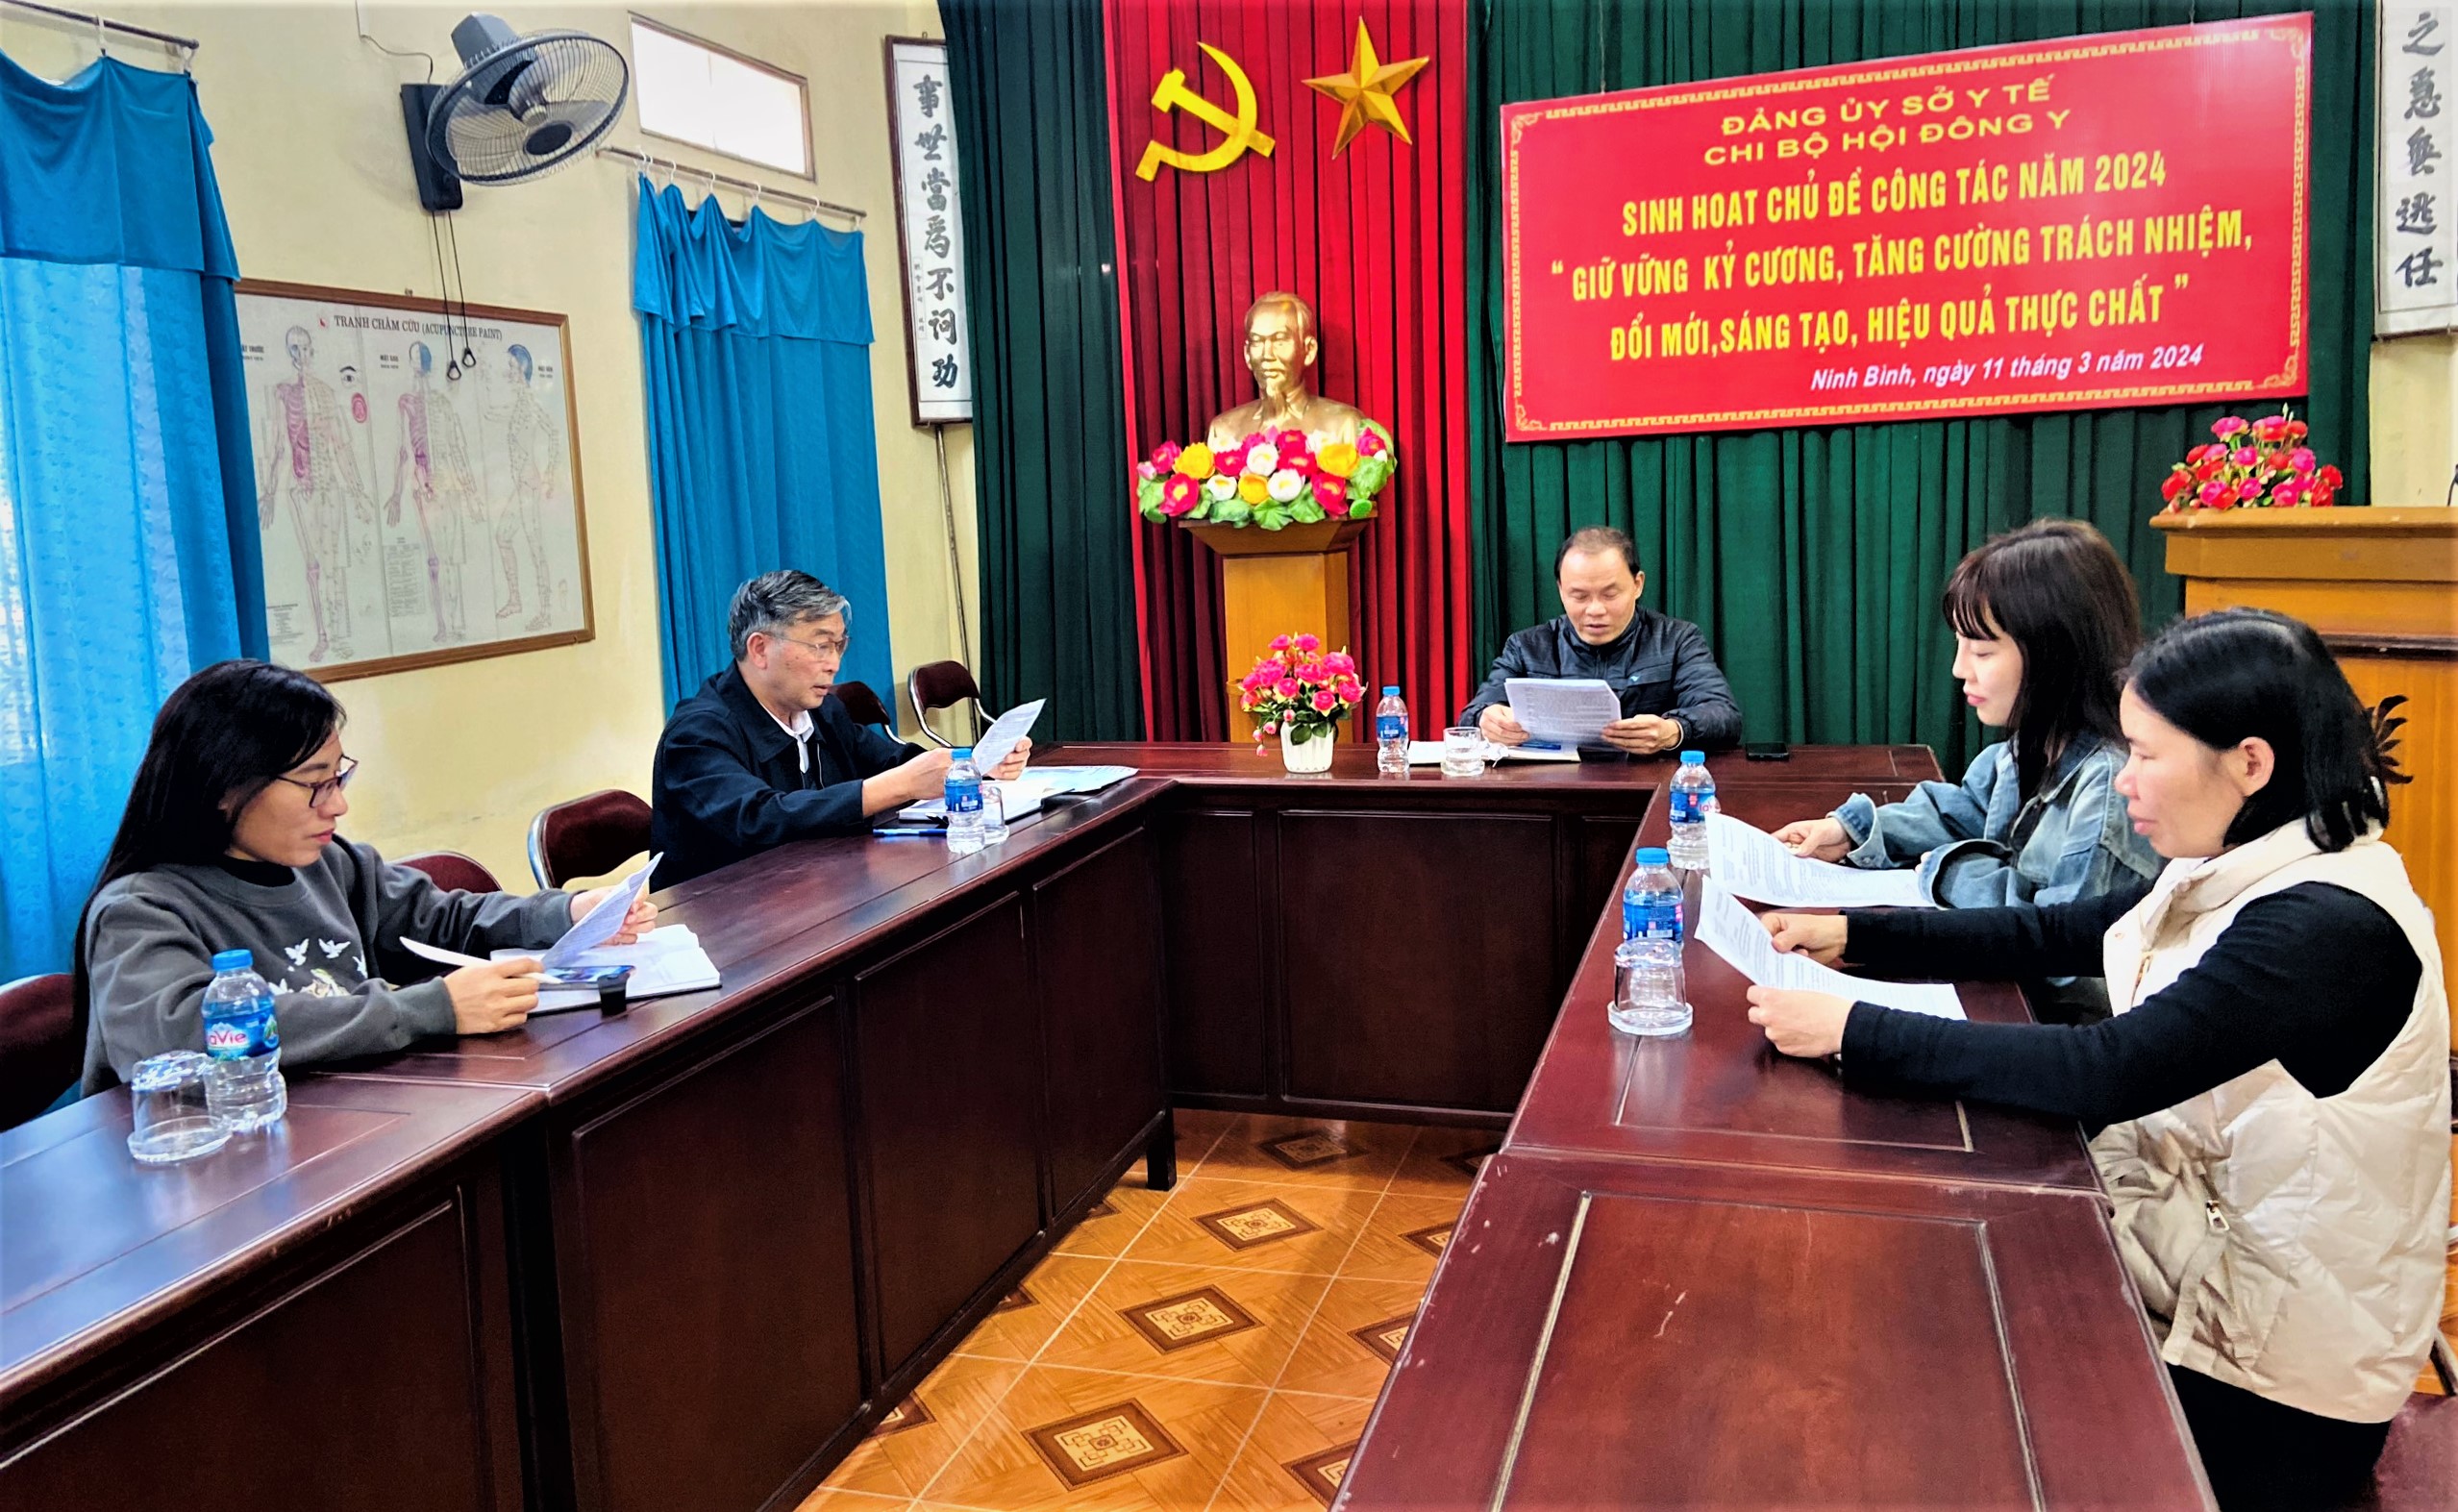 Chi bộ Hội Đông y tỉnh Ninh Bình tổ chức Hội nghị sinh hoạt chuyên đề Chủ đề công tác năm 2024